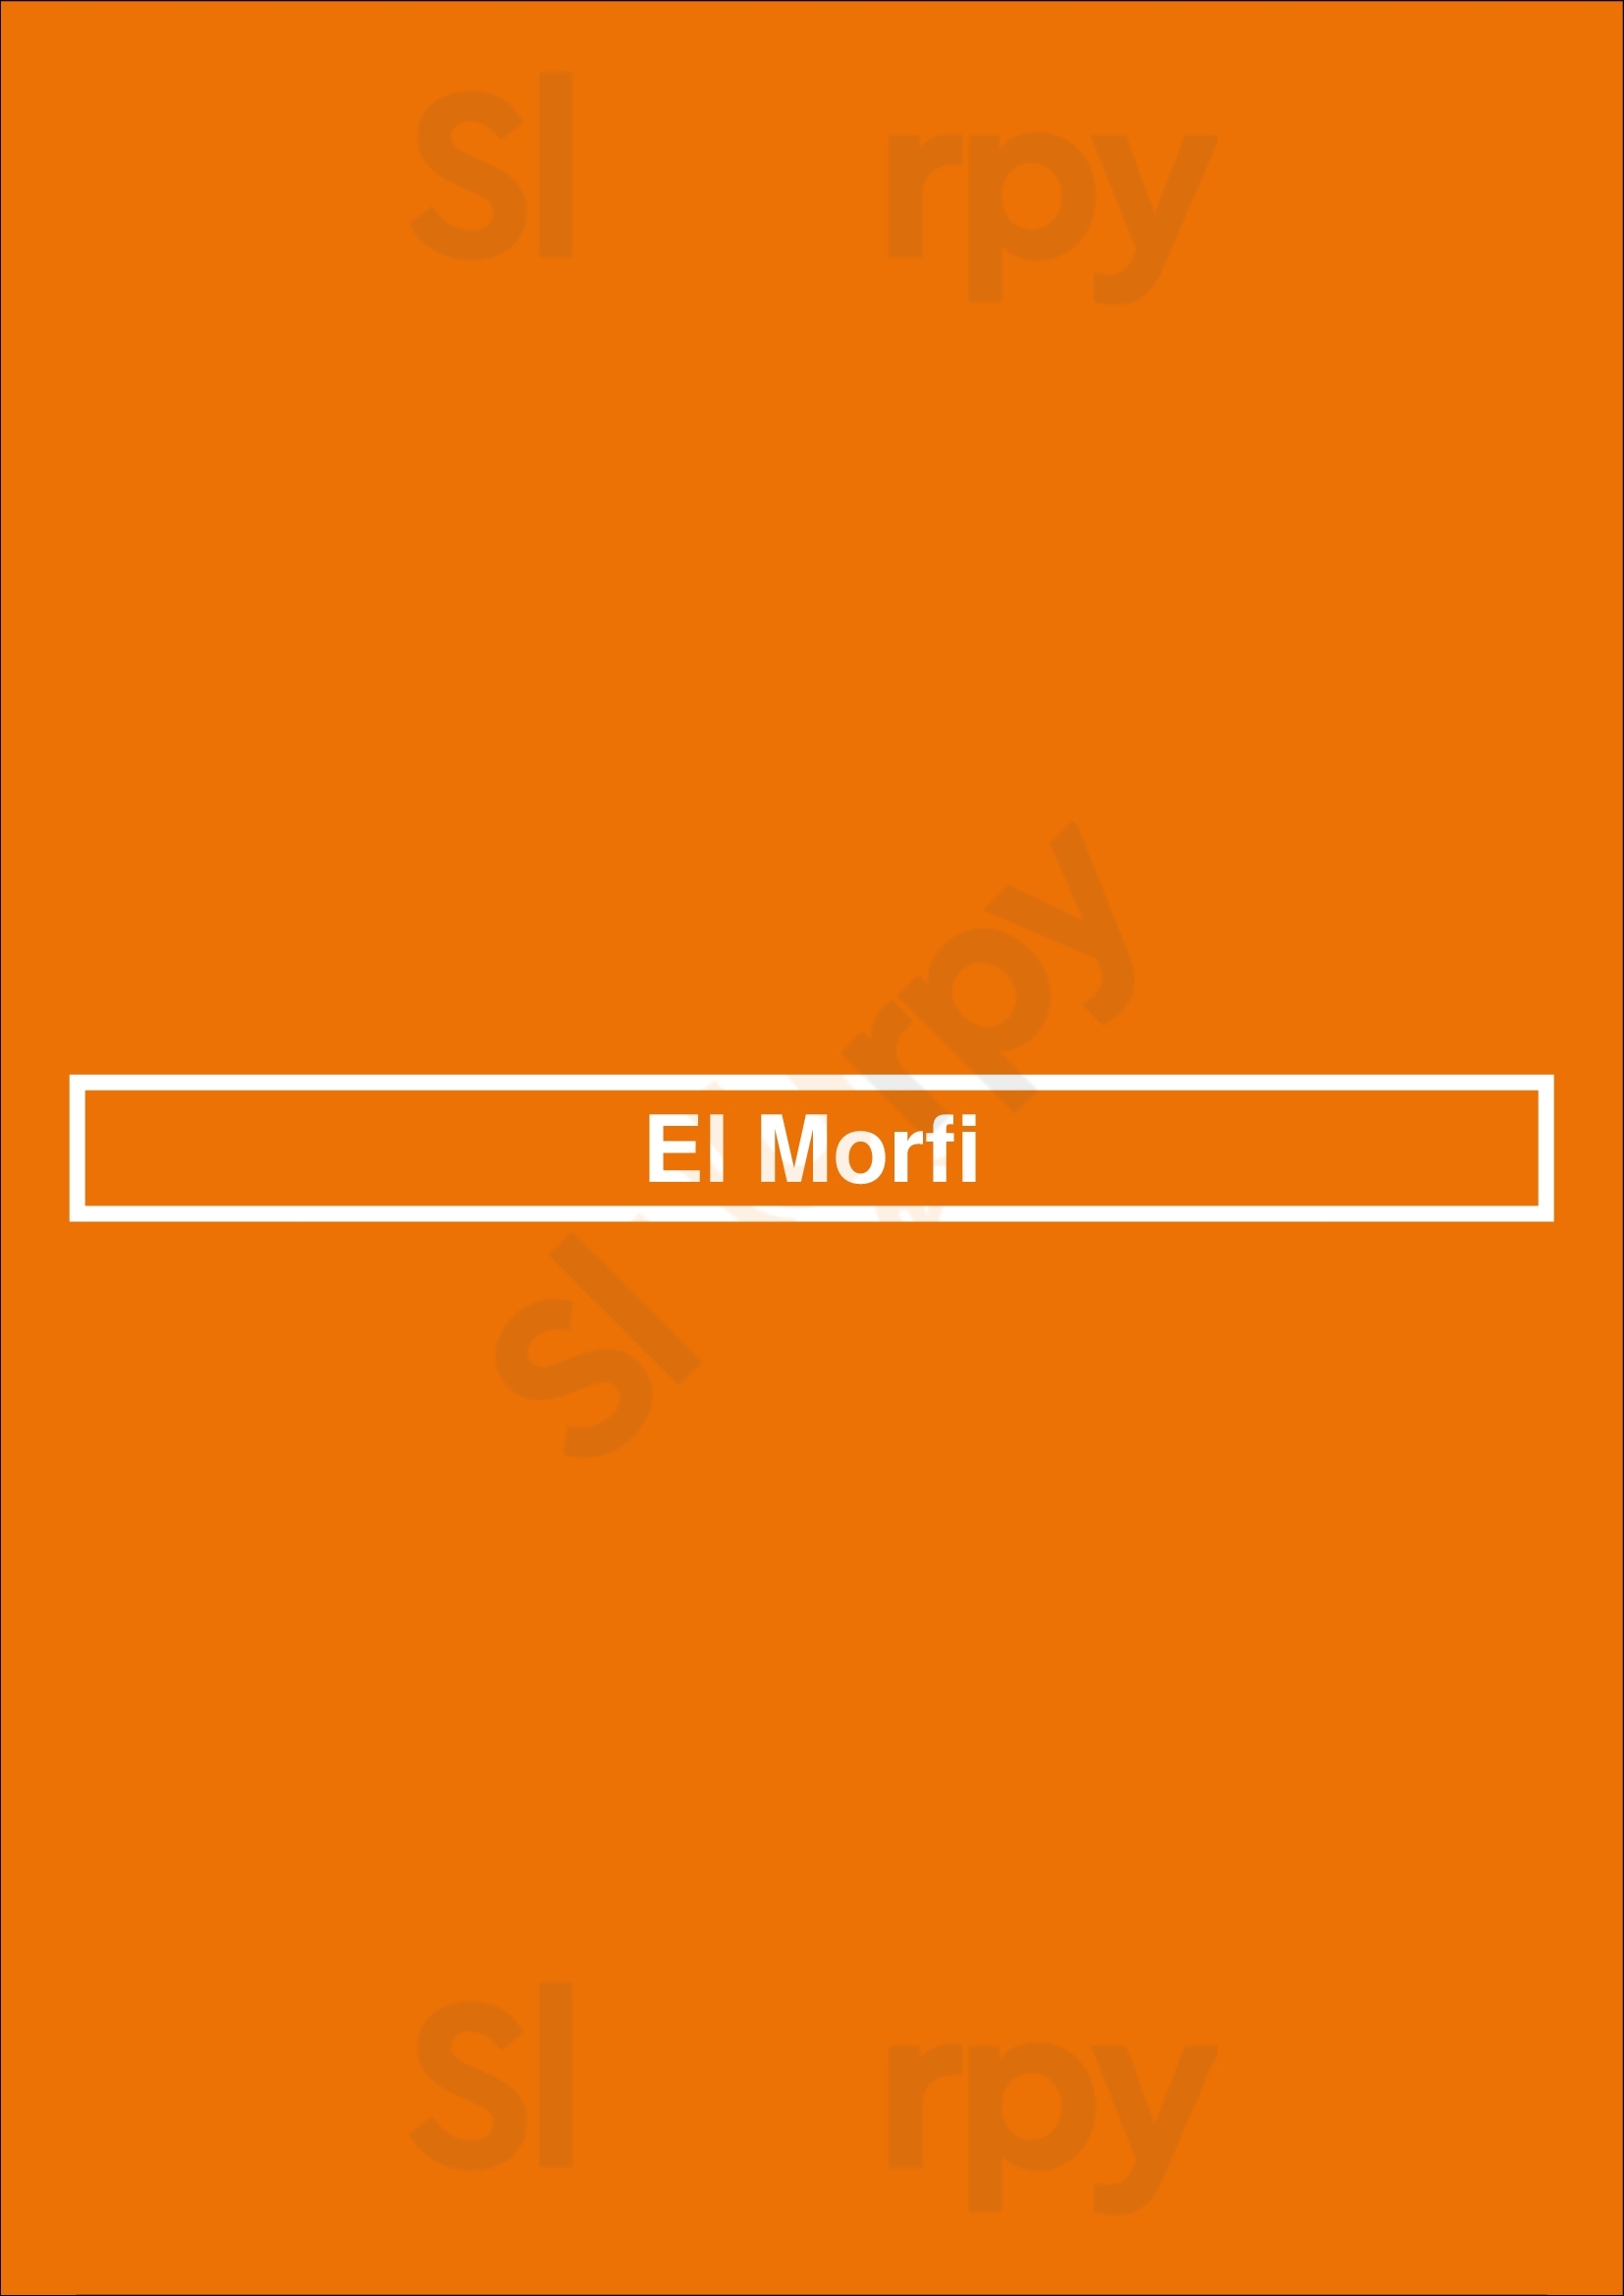 El Morfi Glendale Menu - 1